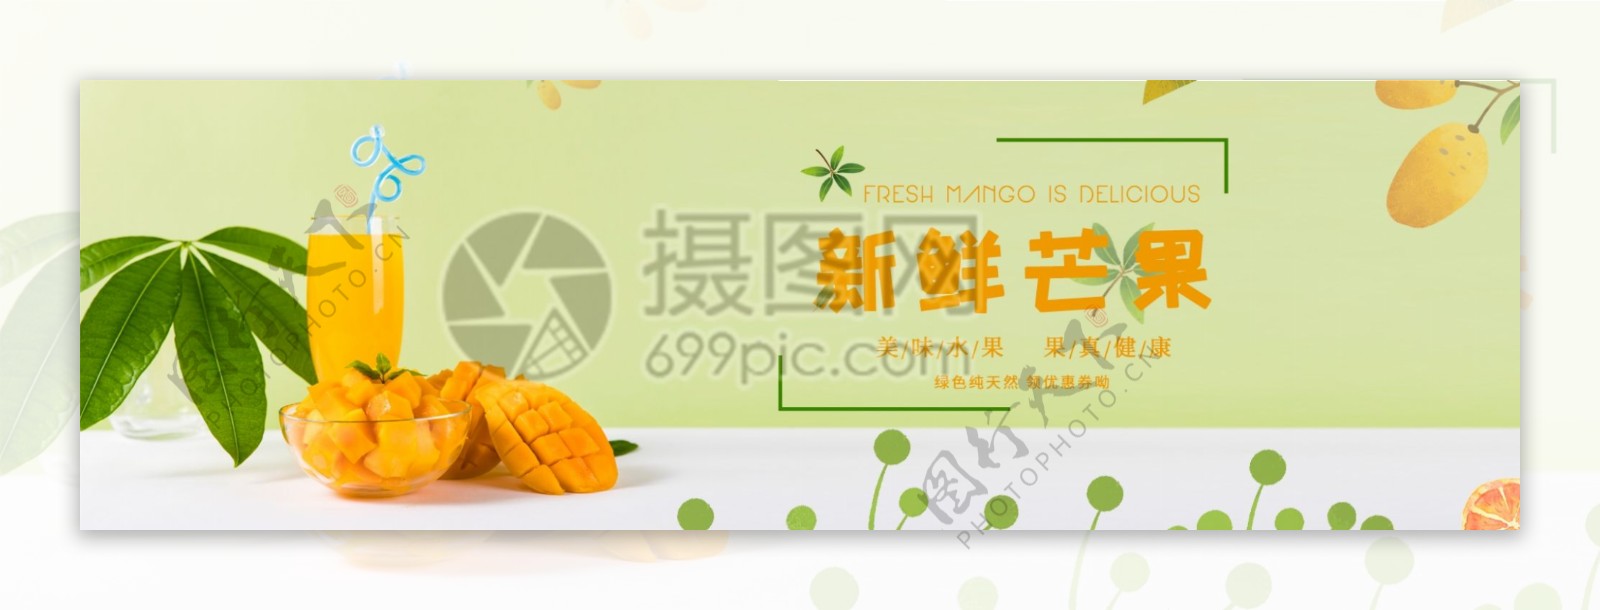 新鲜芒果汁淘宝banner